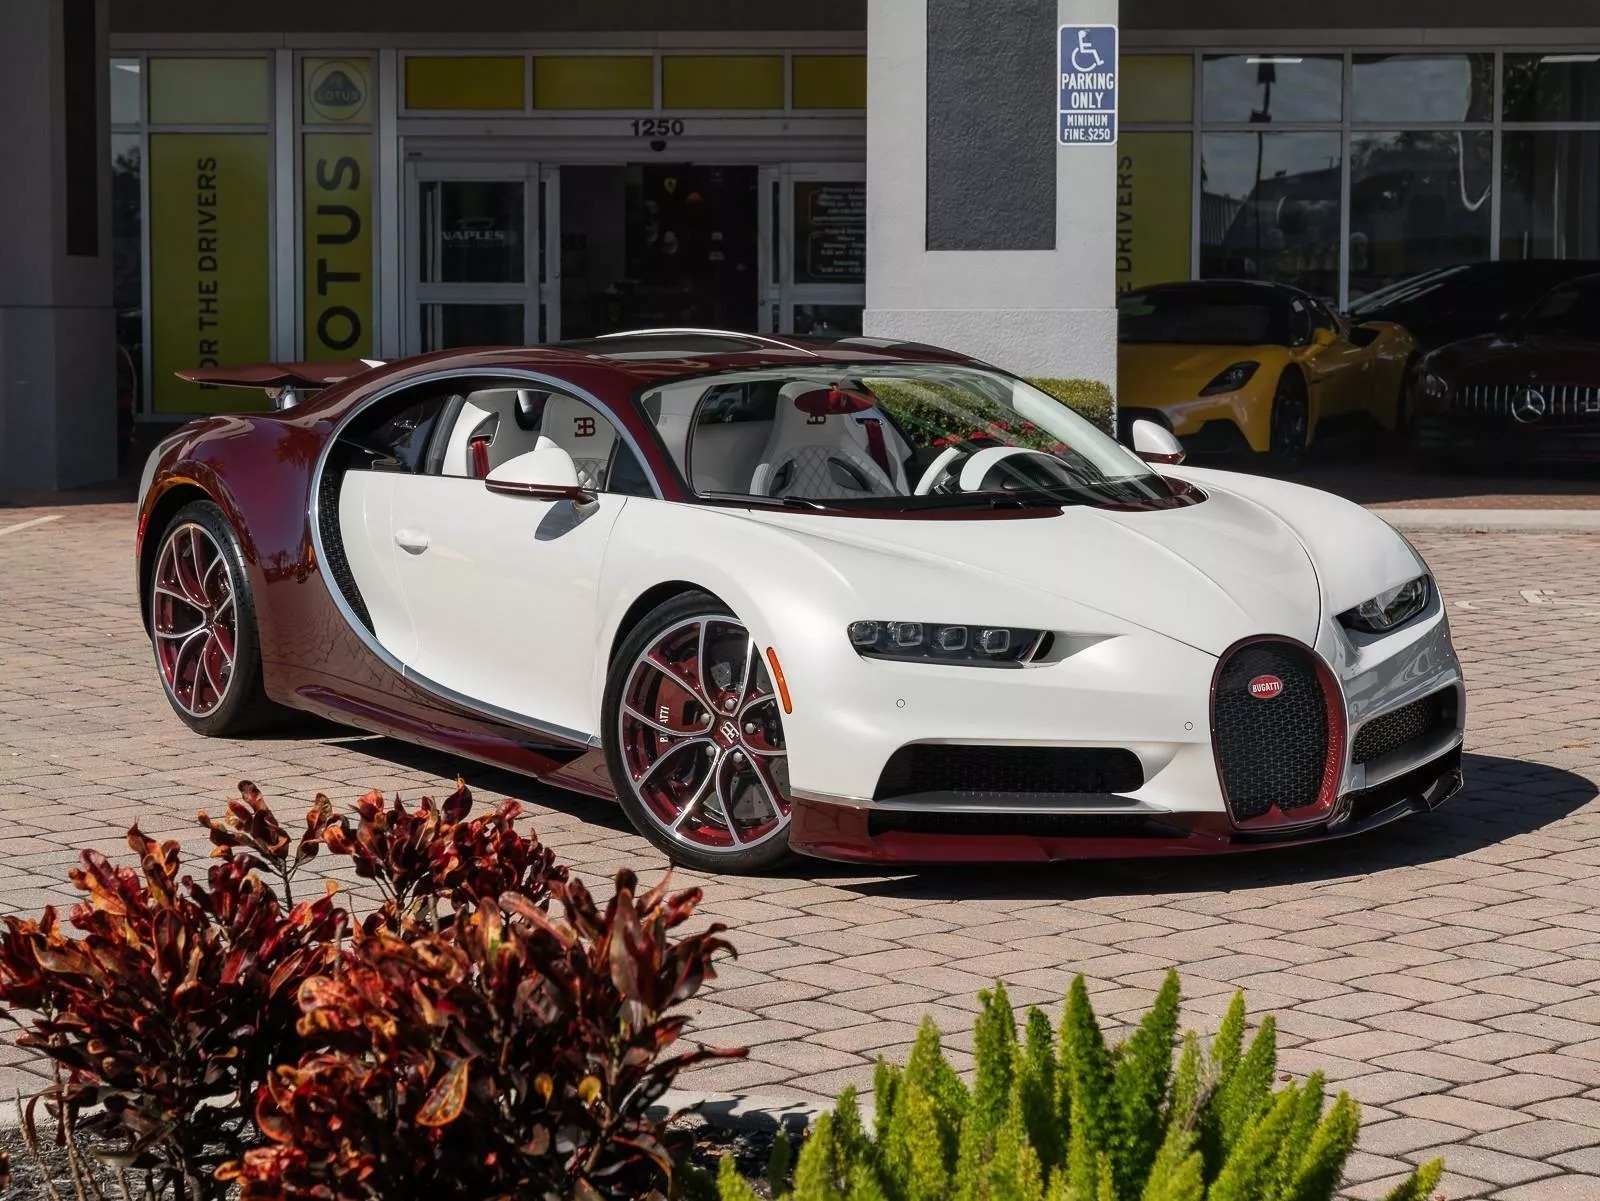 Rao bán Bugatti Chiron giá quy đổi hơn 95 tỷ đồng, chủ xe hứa tặng kèm Rolls-Royce Wraith hợp tông màu- Ảnh 2.